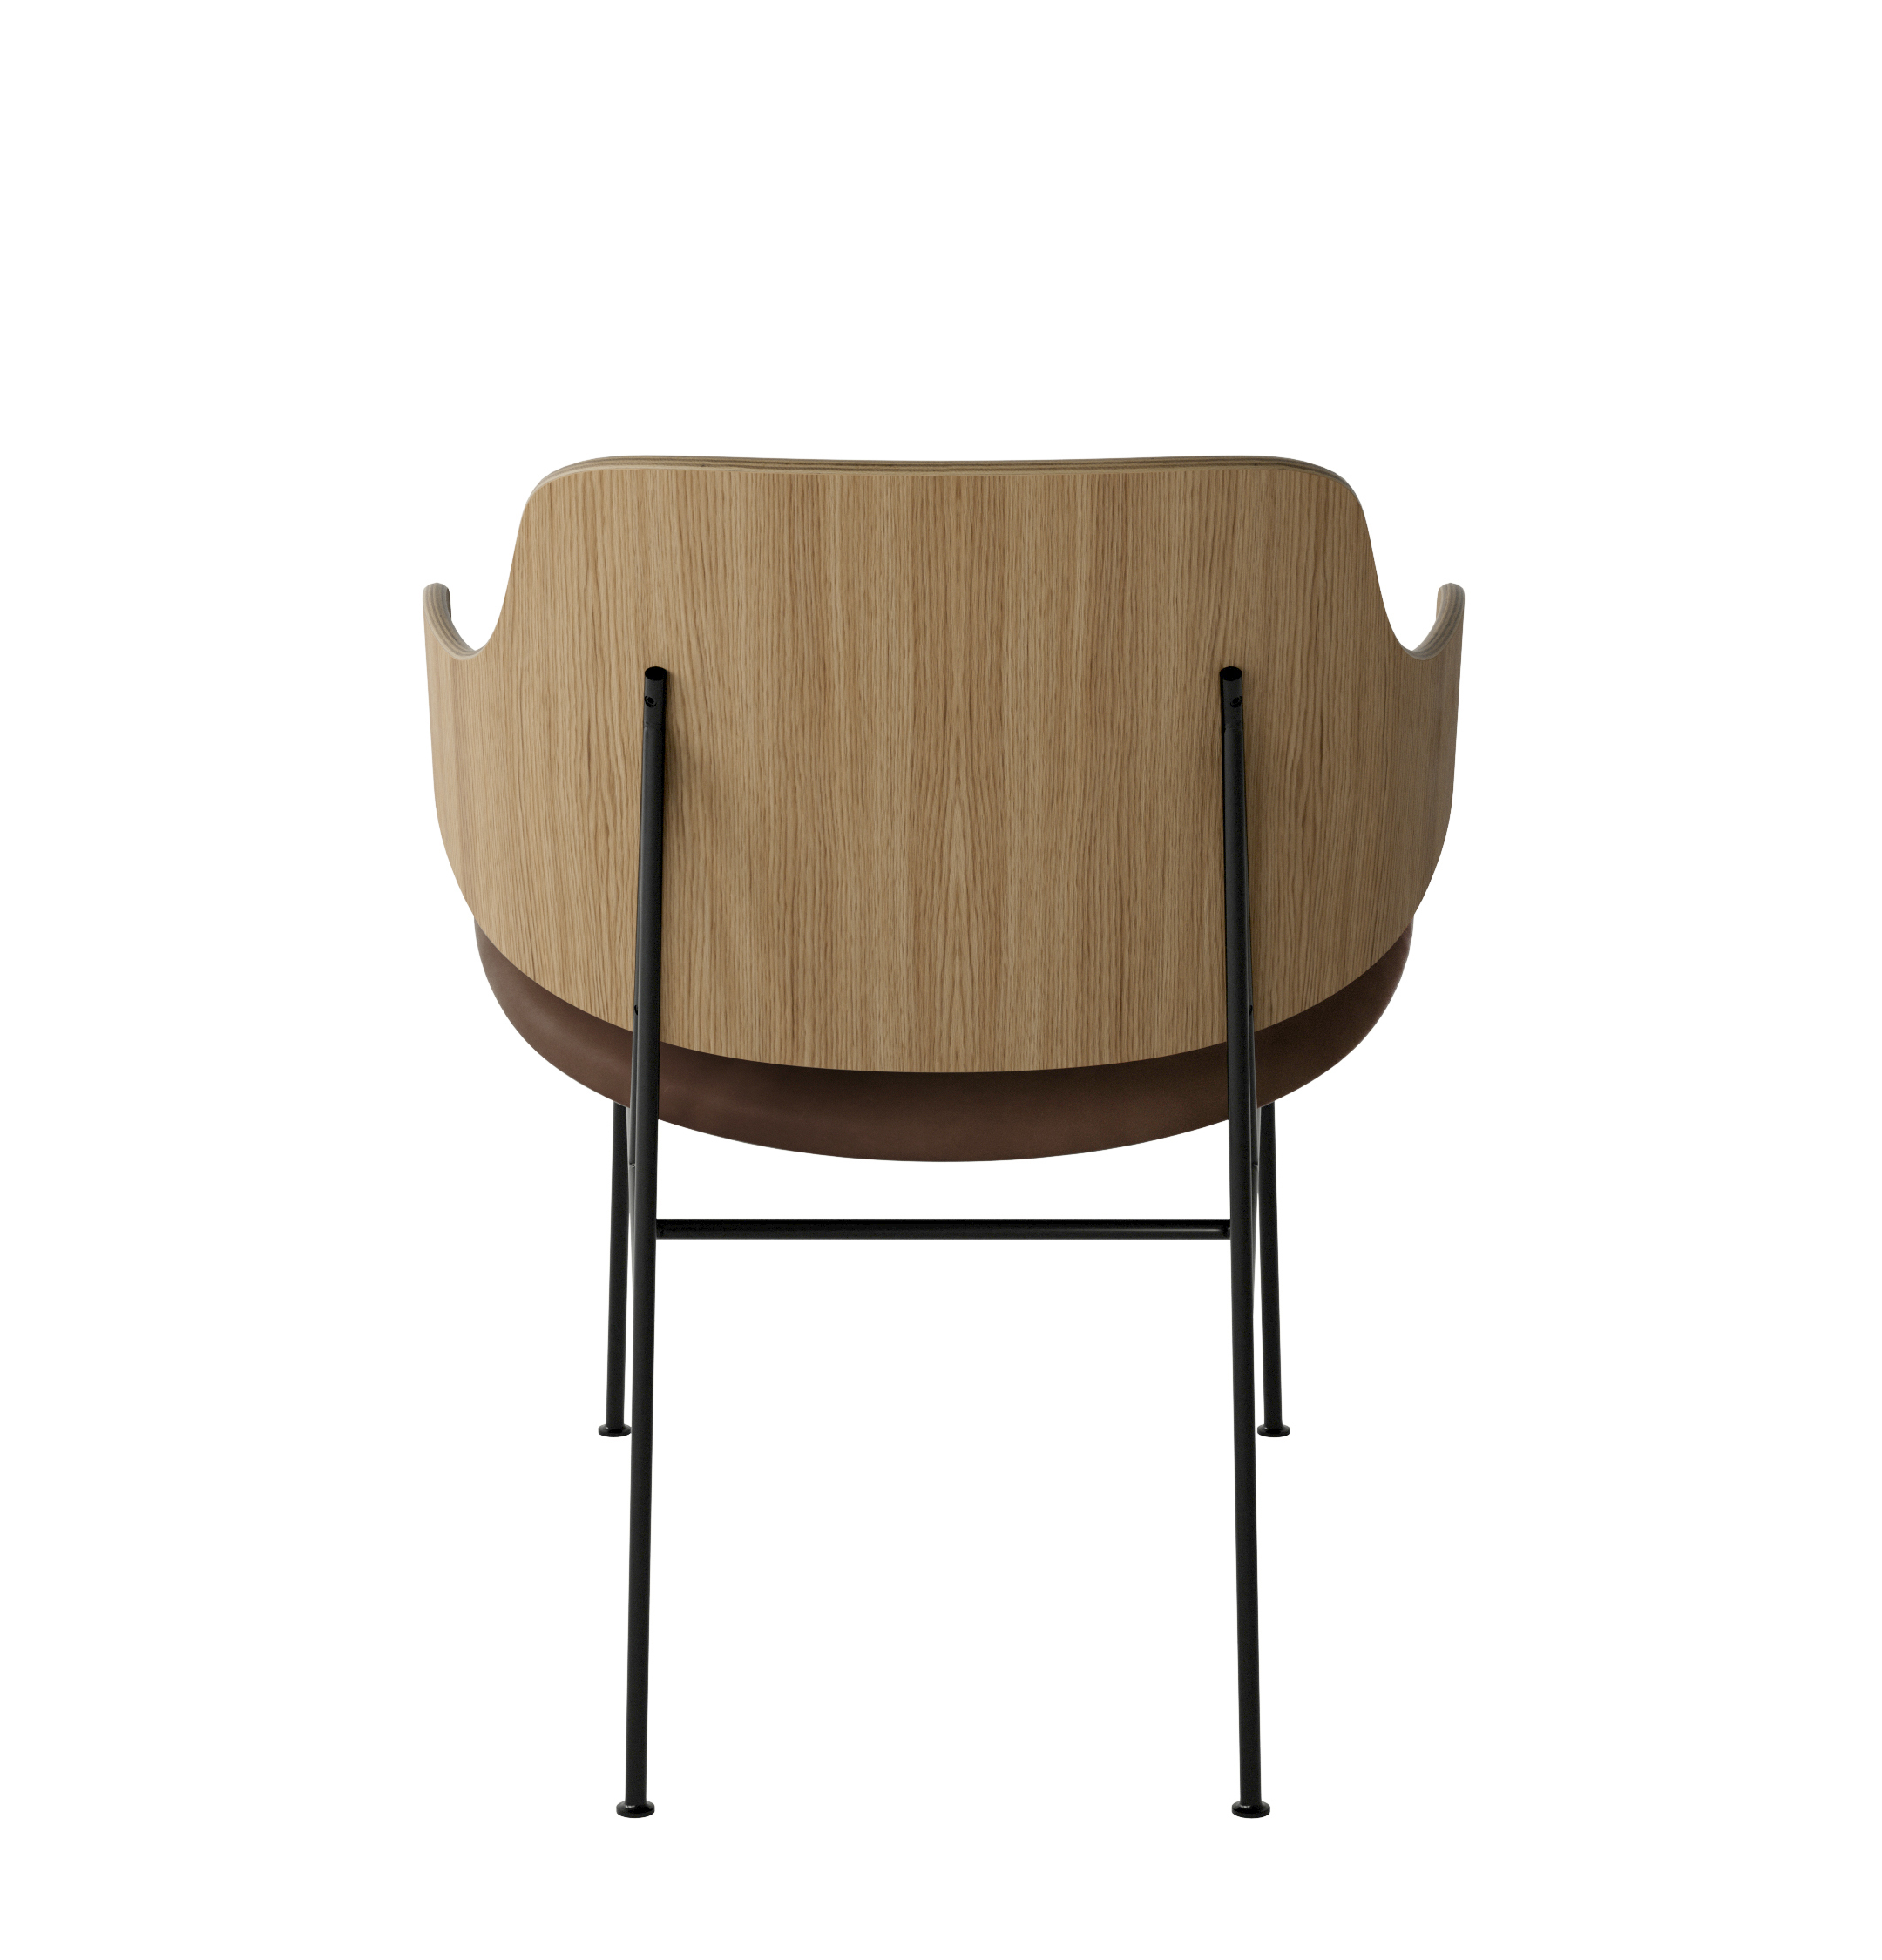 Menu - The Penguin fauteuil, zwart stalen frame, naturel eiken rugleuning, 0329 (Brown)